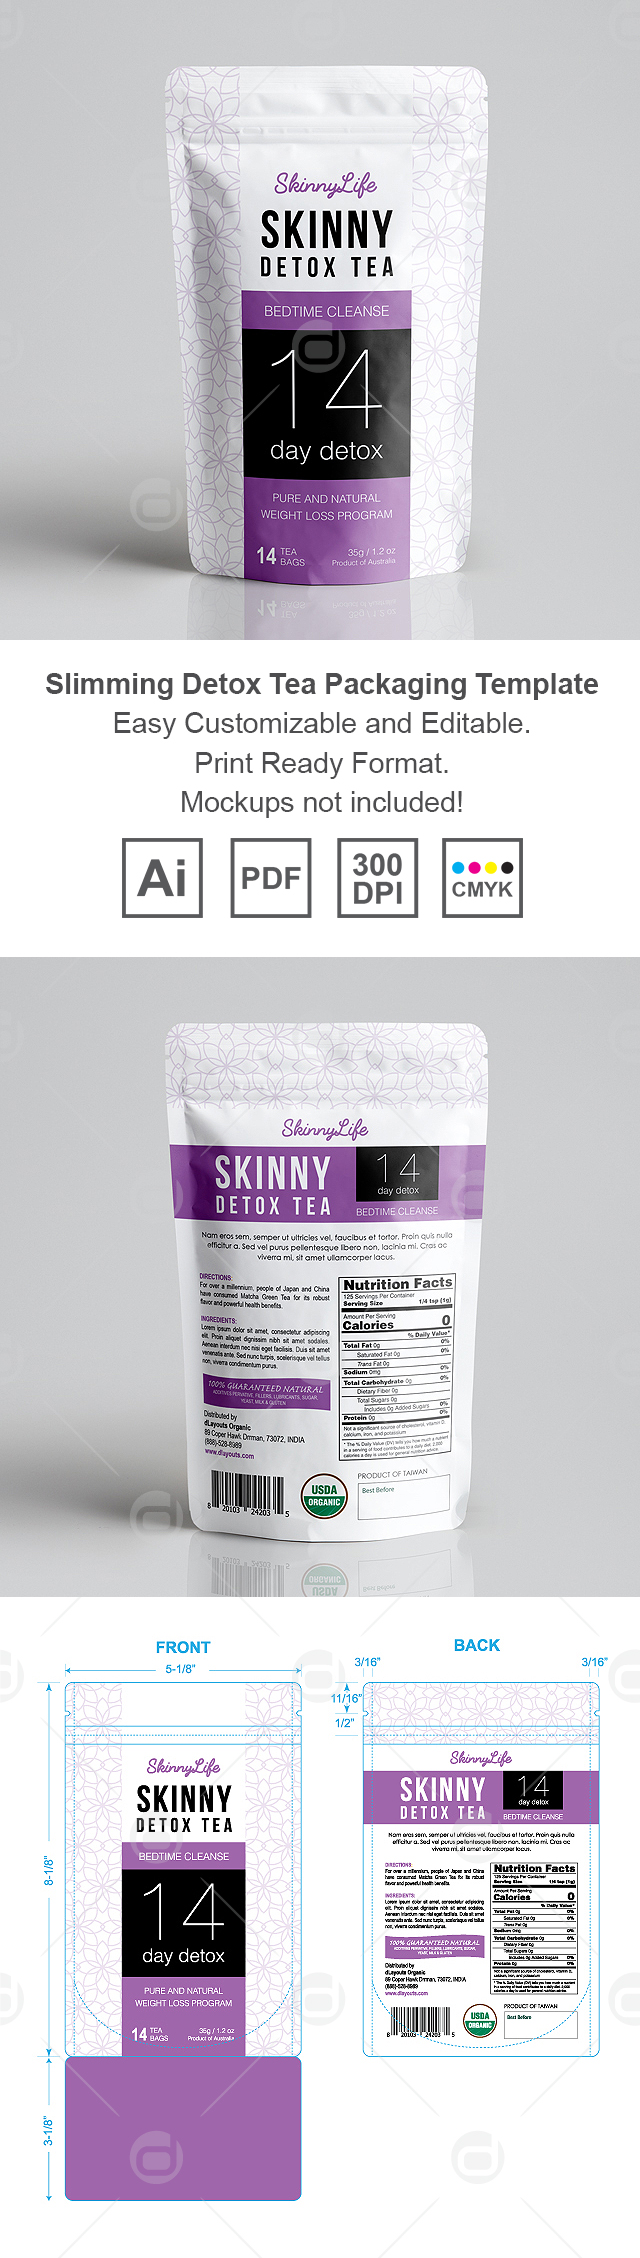 Slimming Bedtime Detox Tea Packaging Template